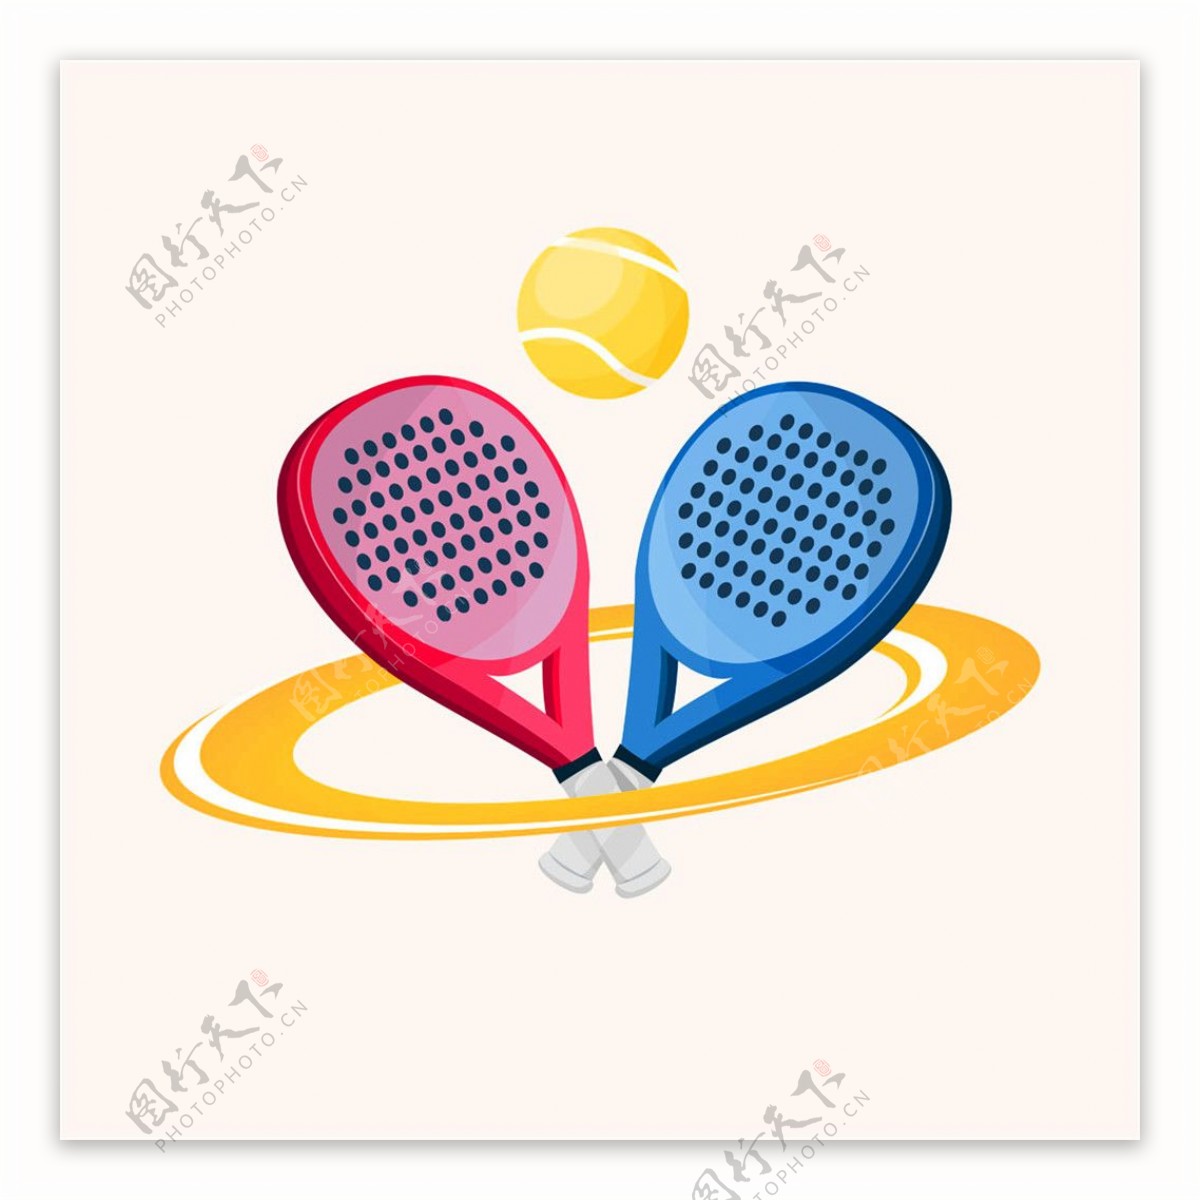 球拍和网球logo图片